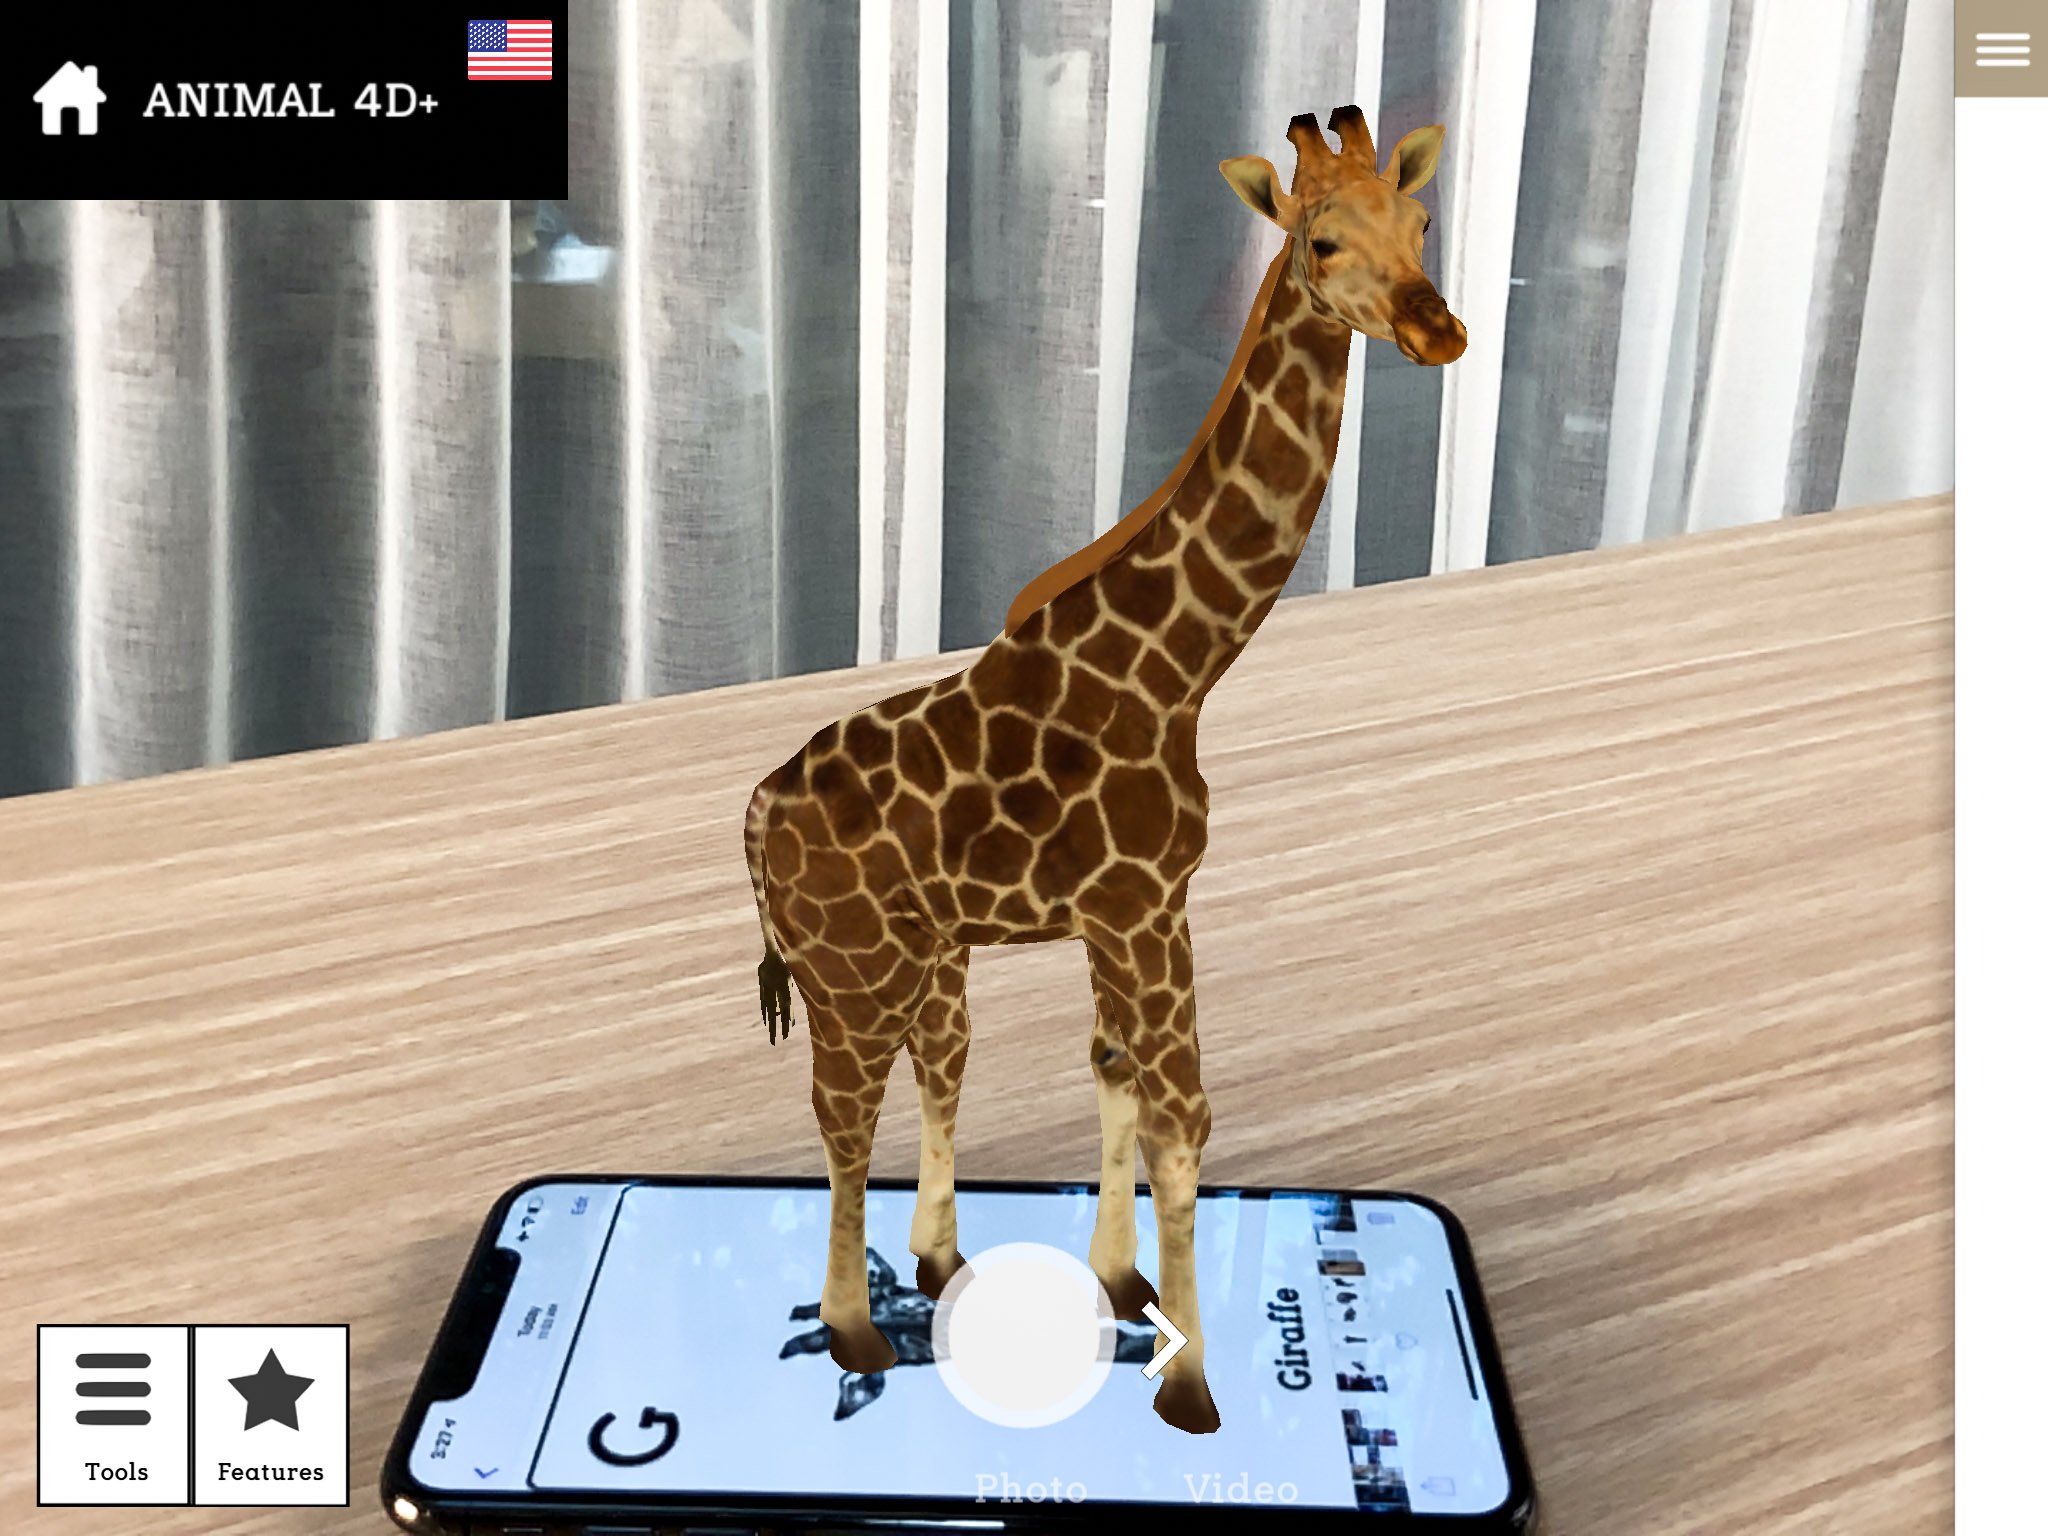 Hướng dẫn tạo động vật 4D bằng điện thoại với ứng dụng Animal 4D+: biết bò,  biết kêu